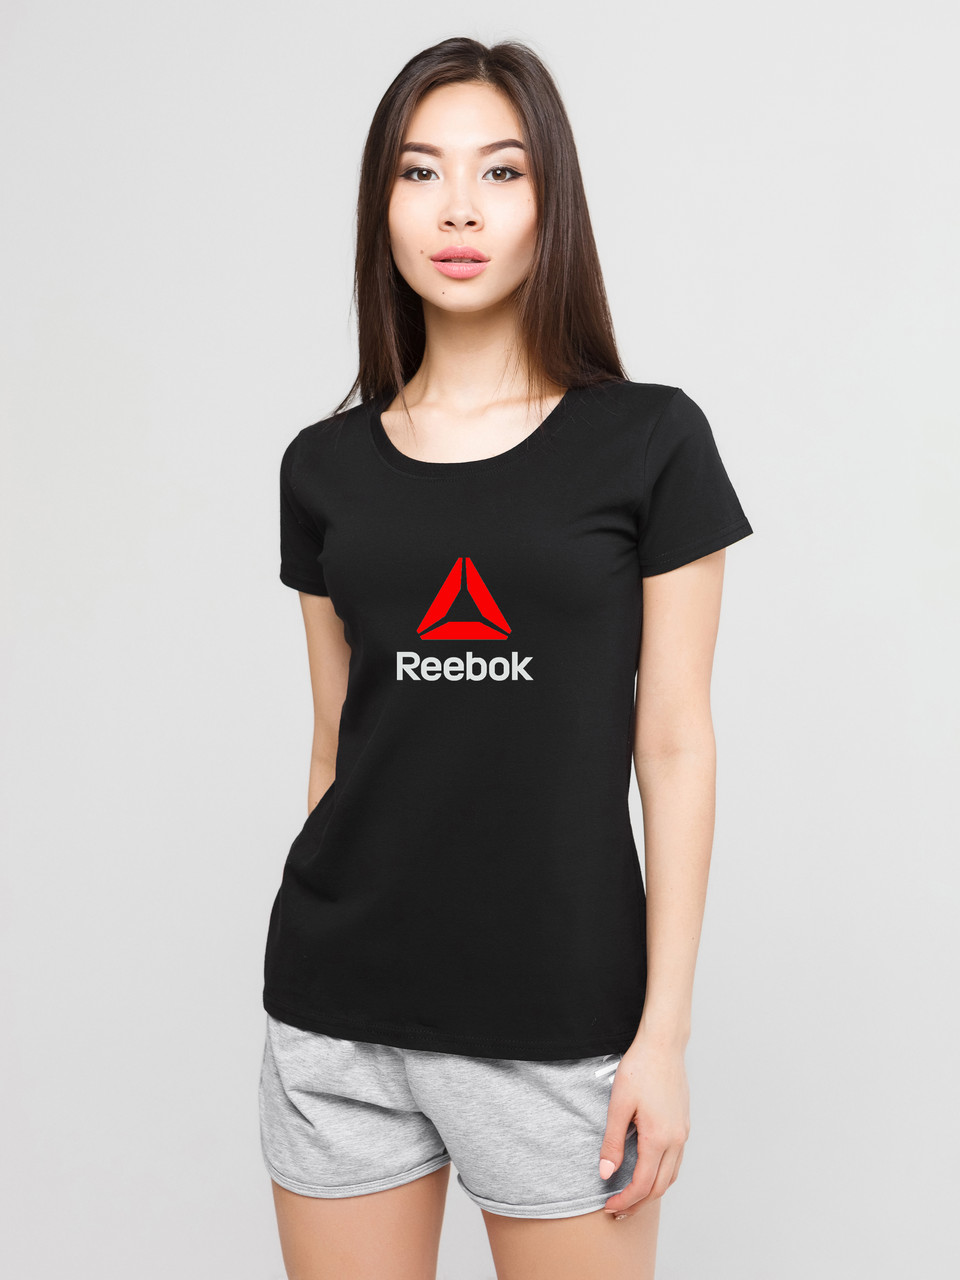 Жіночий комплект Reebok футболка + шорти, рибок